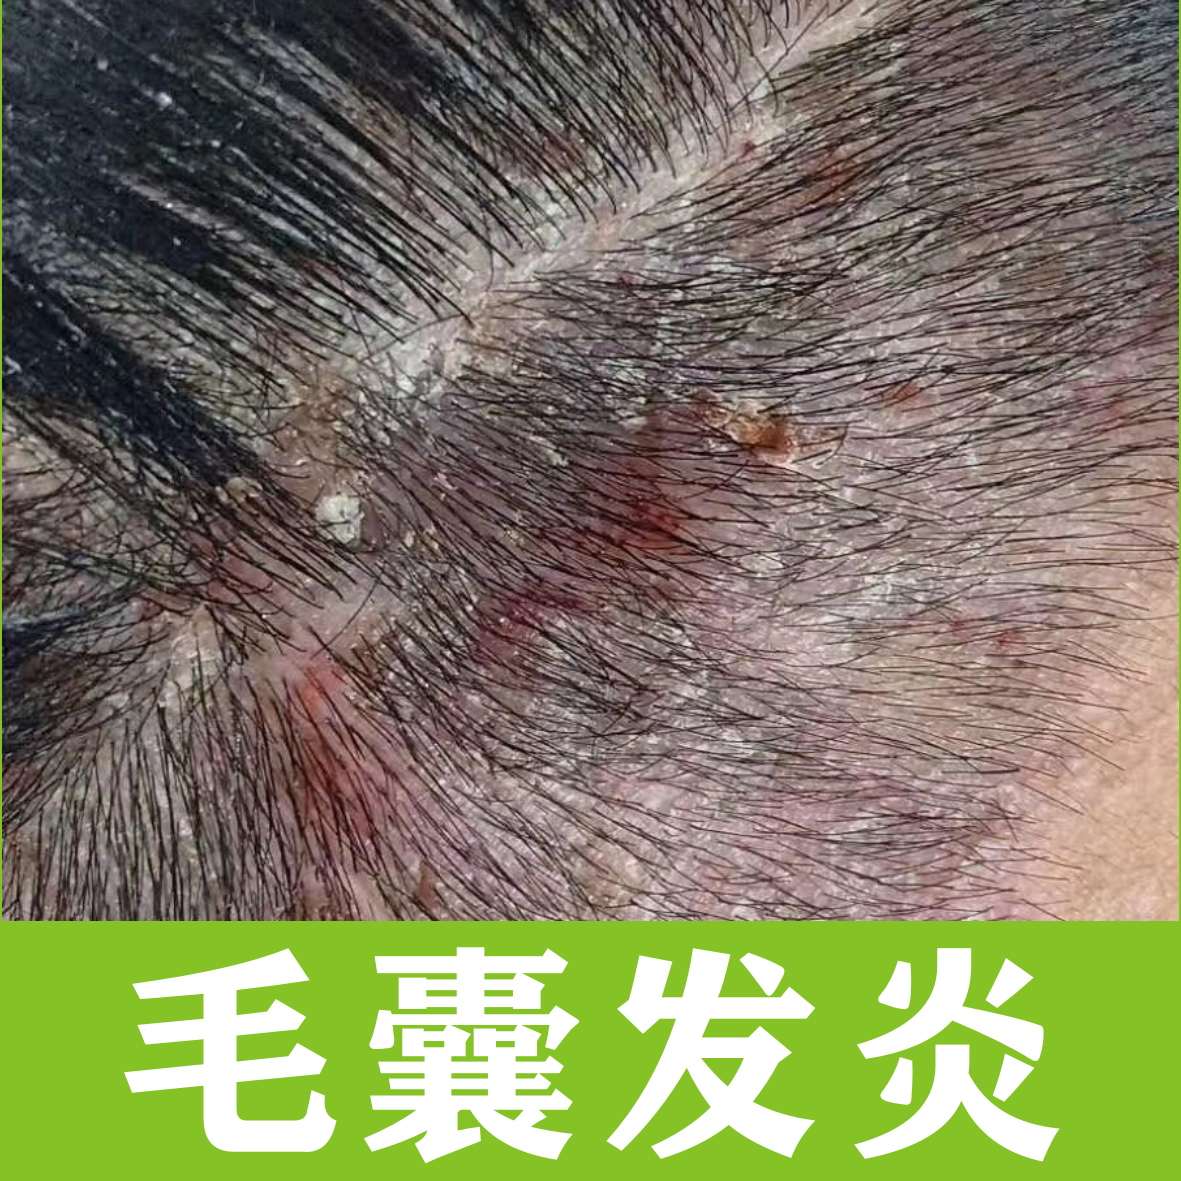 马拉色菌毛囊炎的治愈全过程（亲身经历）图片可能引起不适请谨慎观看 - 知乎